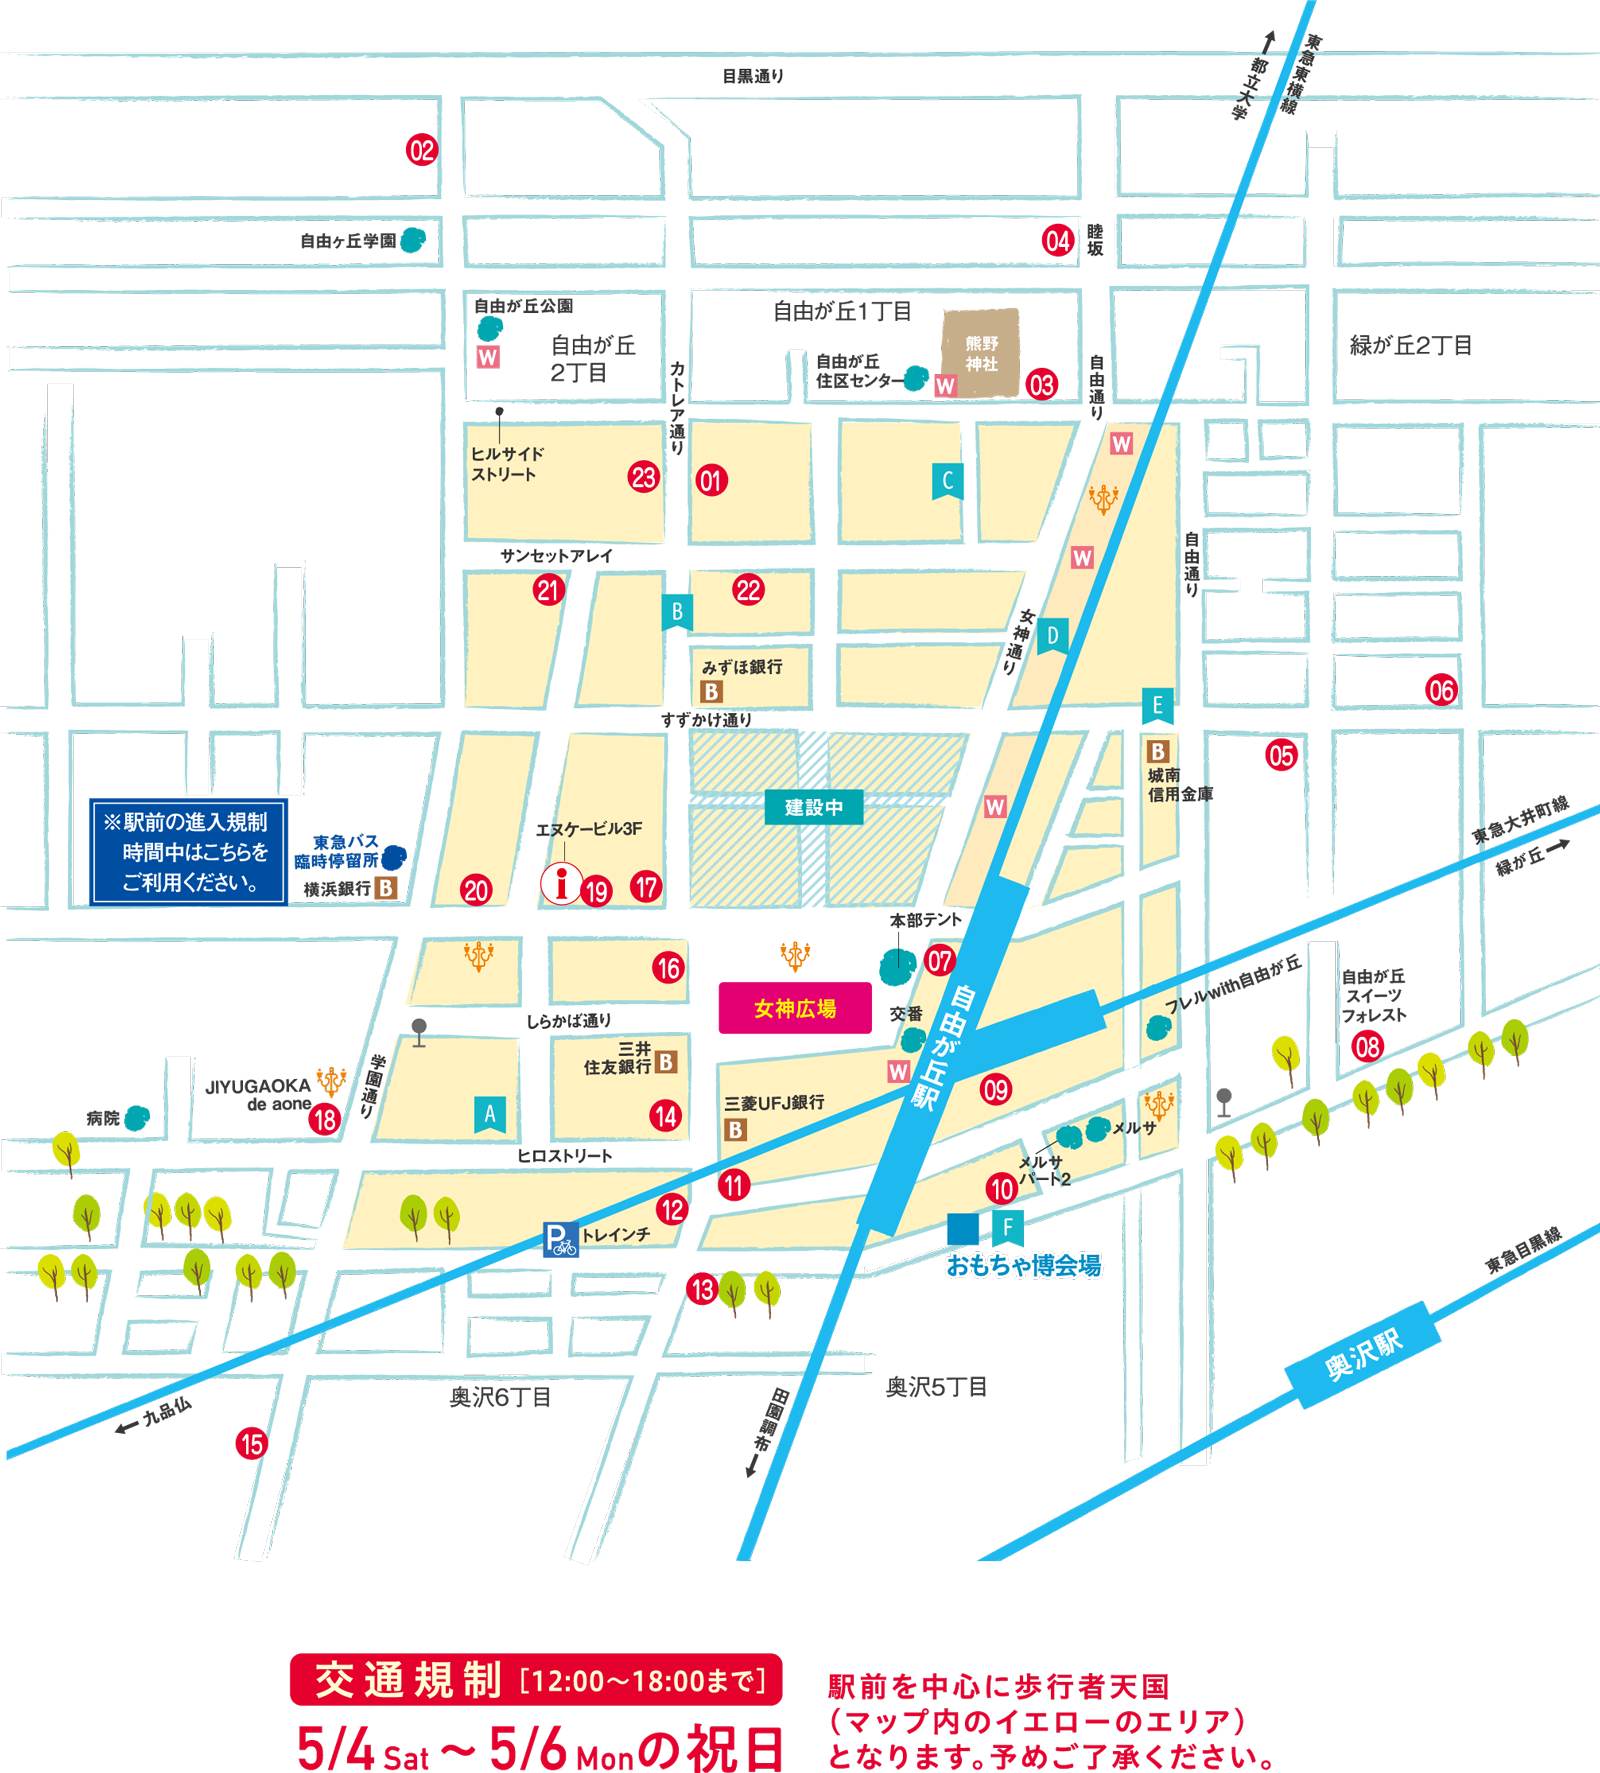 交通規制 [12:00〜18:00まで] 5/4 Sat〜5/6 Monの祝日 駅前を中心に歩行者天国（マップ内のイエローのエリア）となります。予めご了承ください。